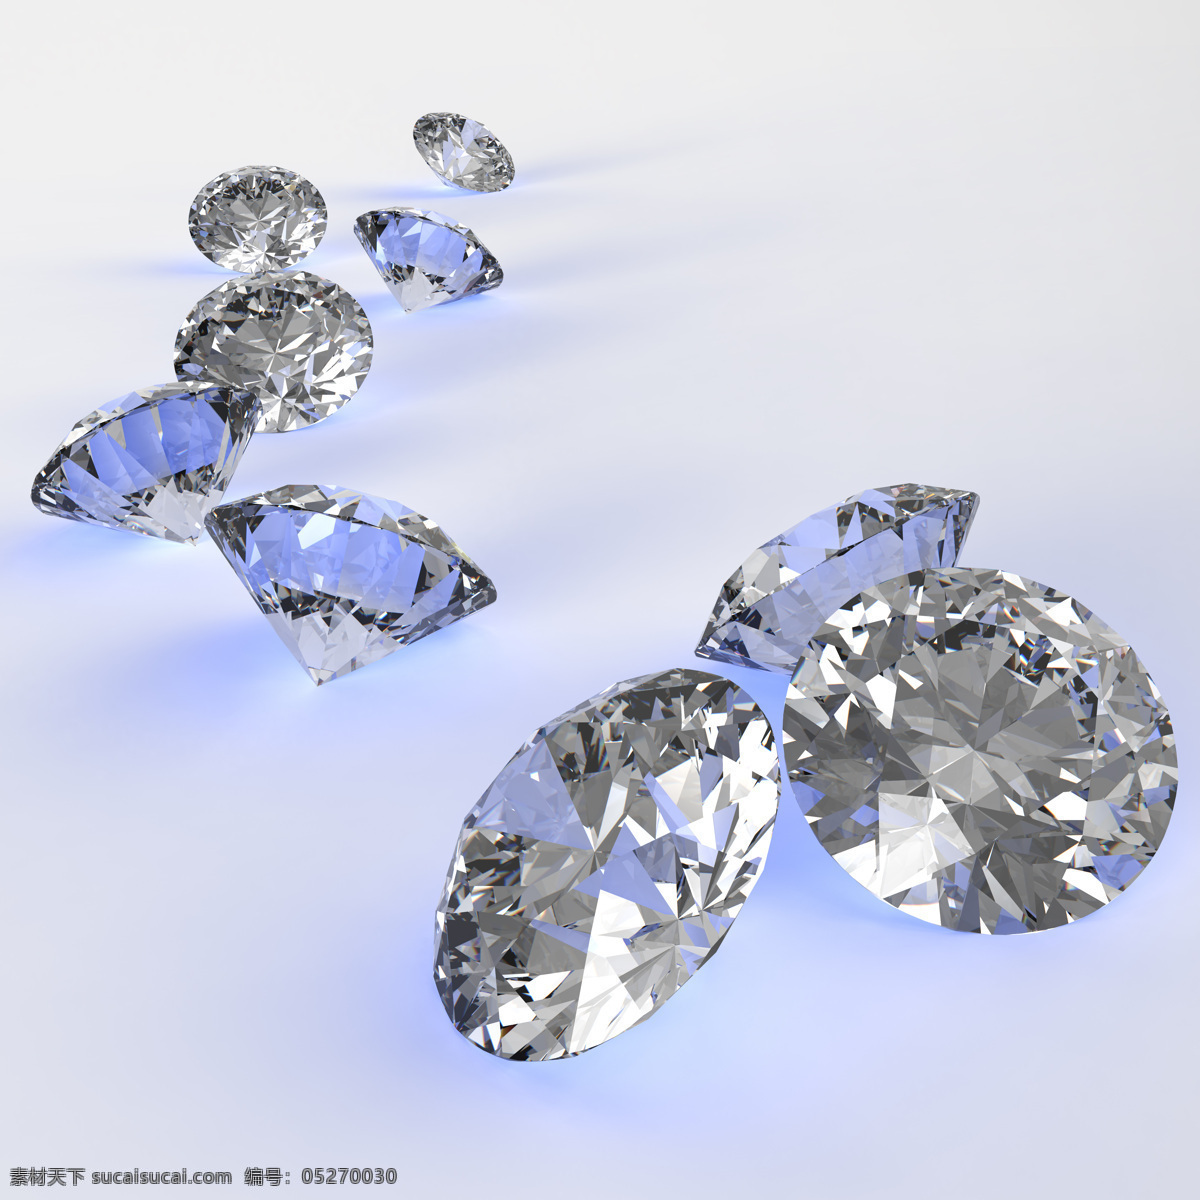 彩色 锥形 钻石 水晶 钻石摄影 钻石素材 珠宝 饰品 首饰 珠宝服饰 生活百科 白色